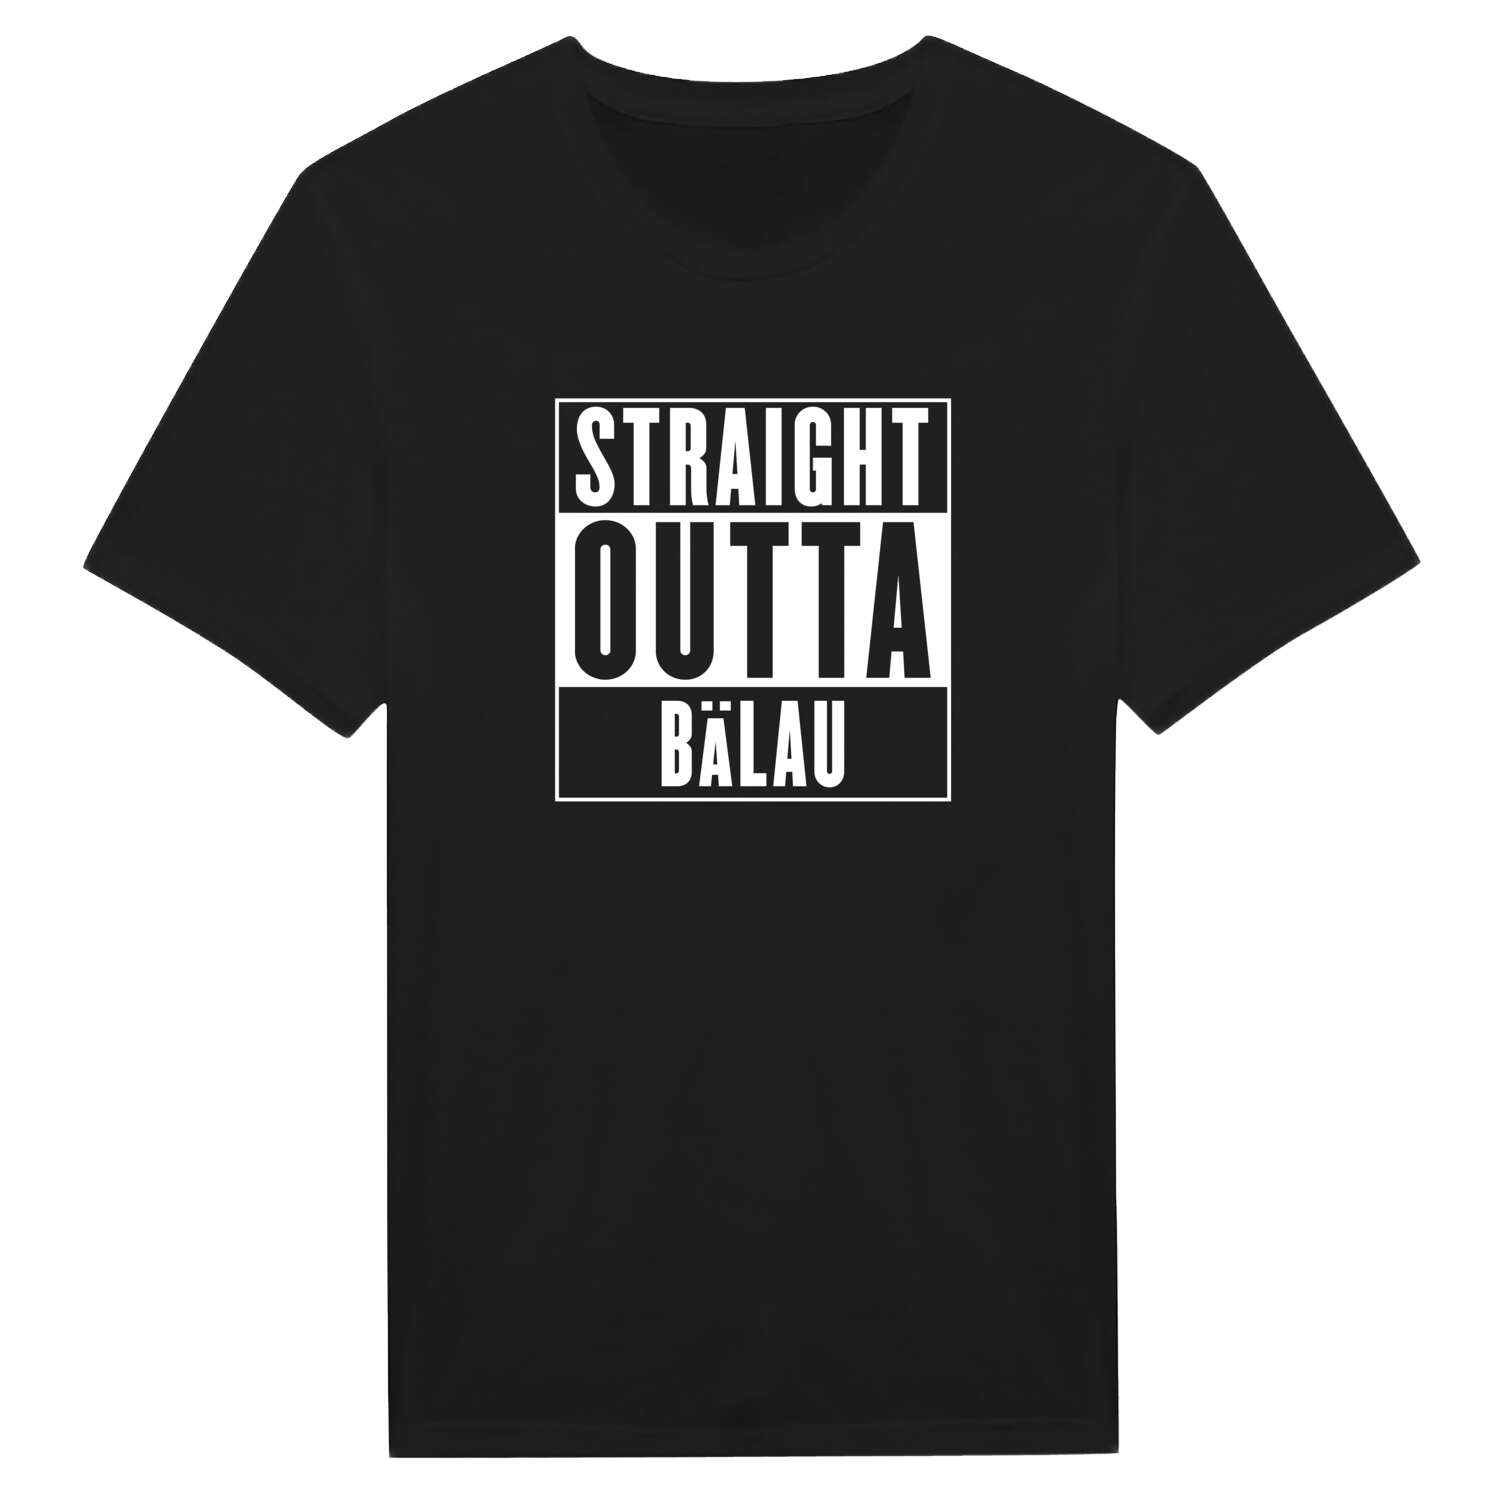 Bälau T-Shirt »Straight Outta«